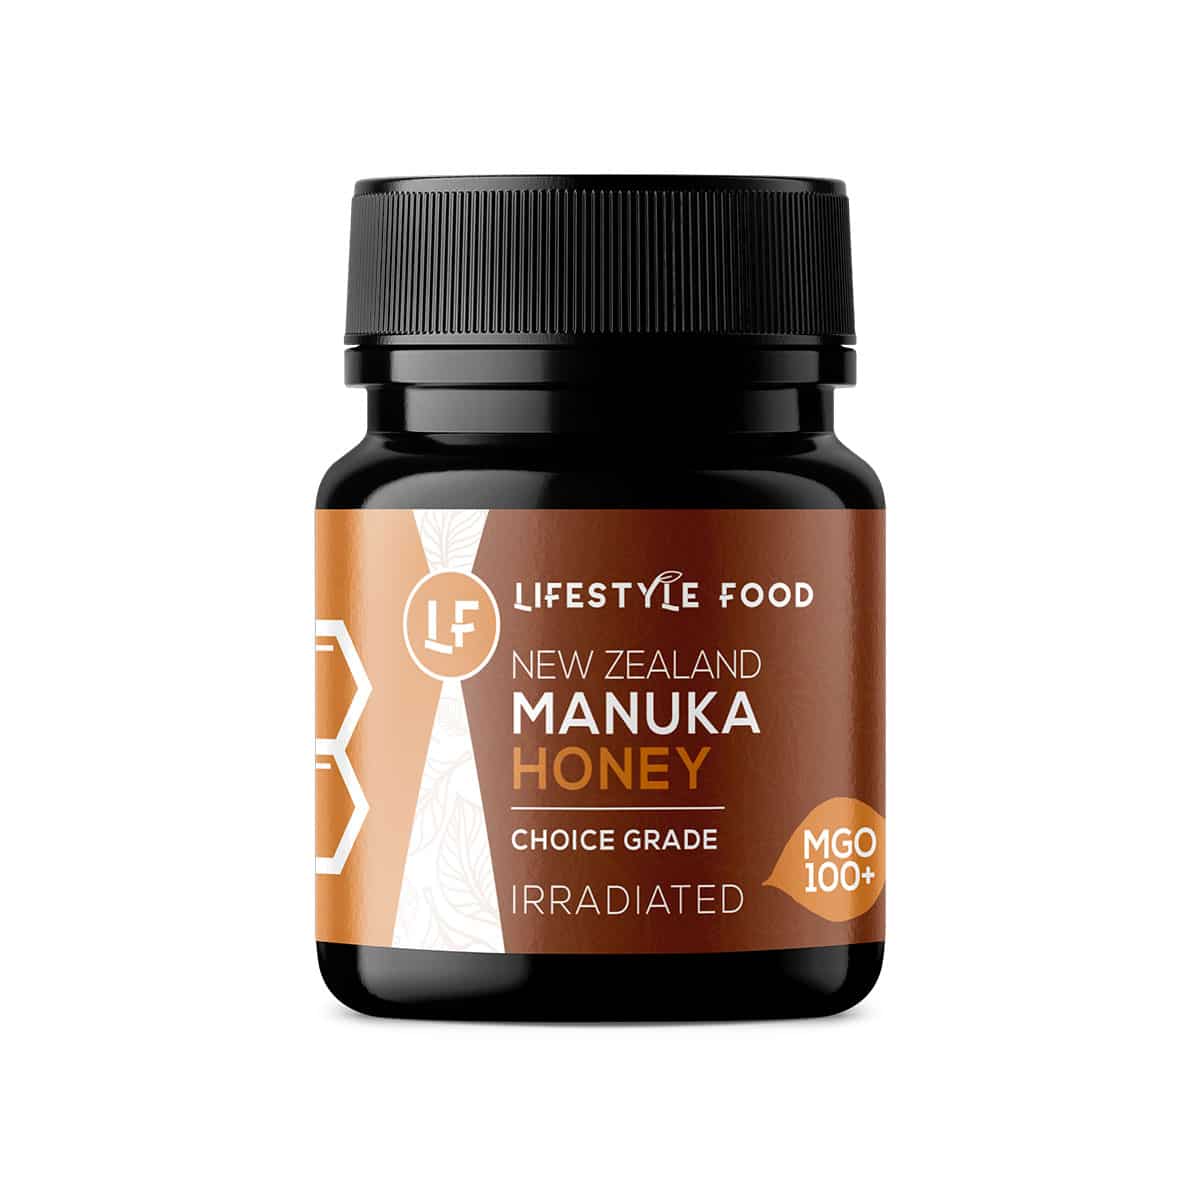 Lifestyle Food Manuka Honey MGO 100+ Choice Grade - 250g